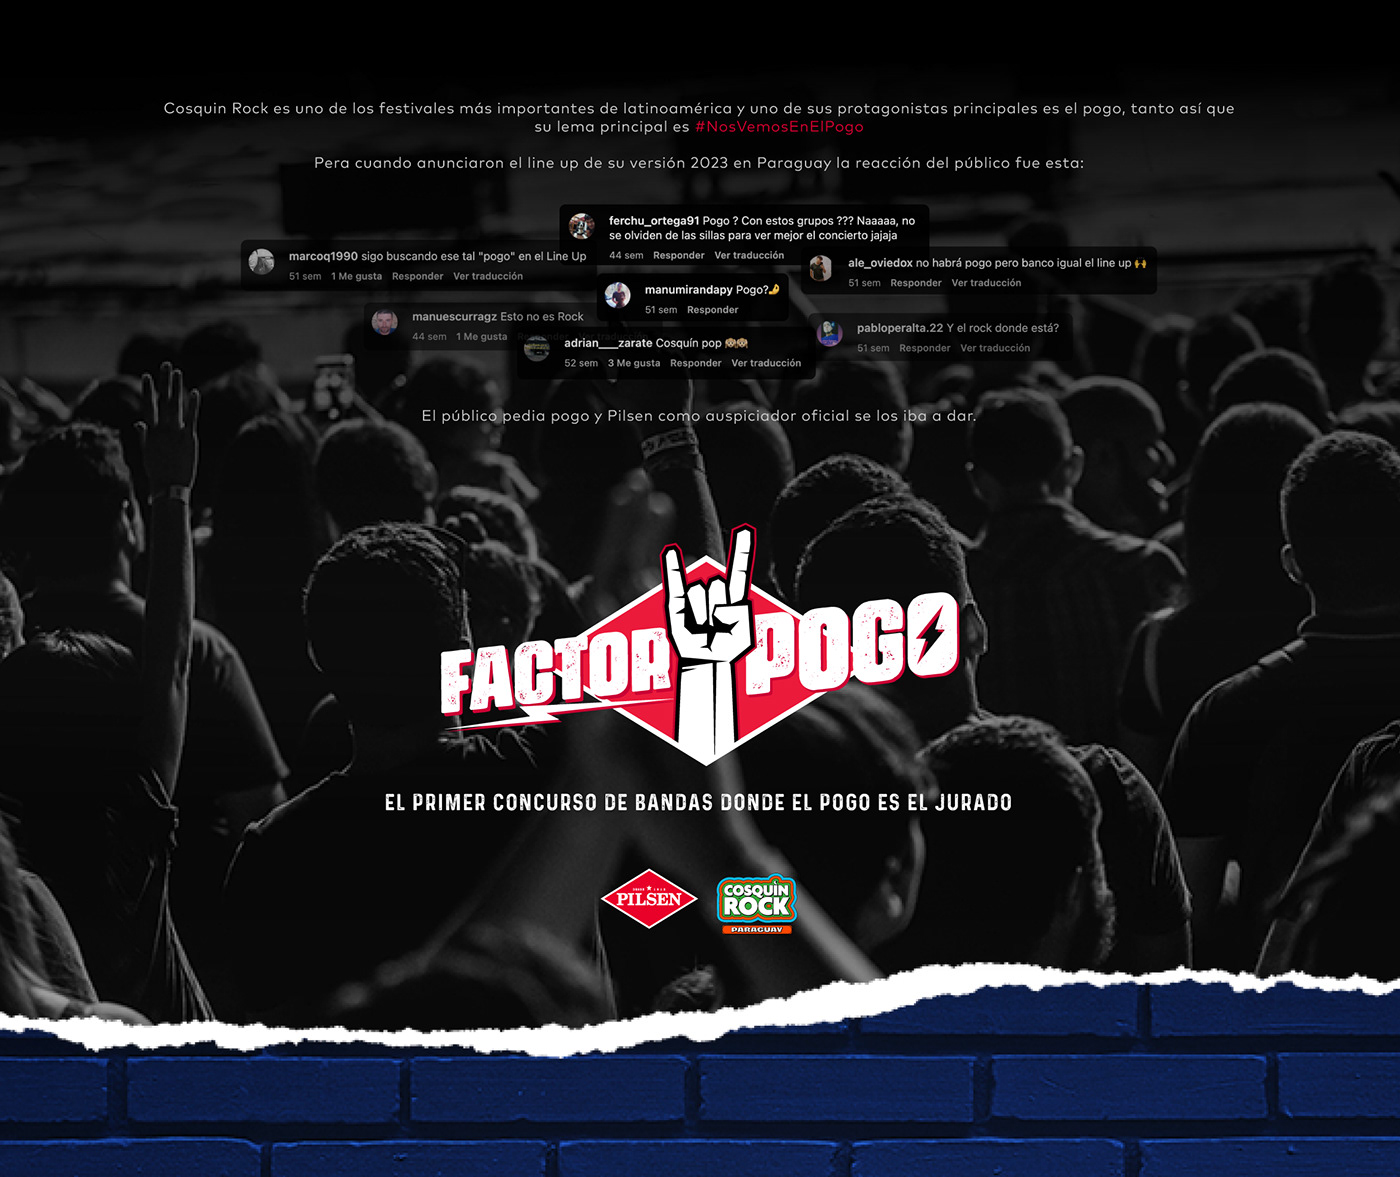 pilsen POGO Cosquin Rock cosquin cerveza Conciertos festivales publicidad musica paraguay